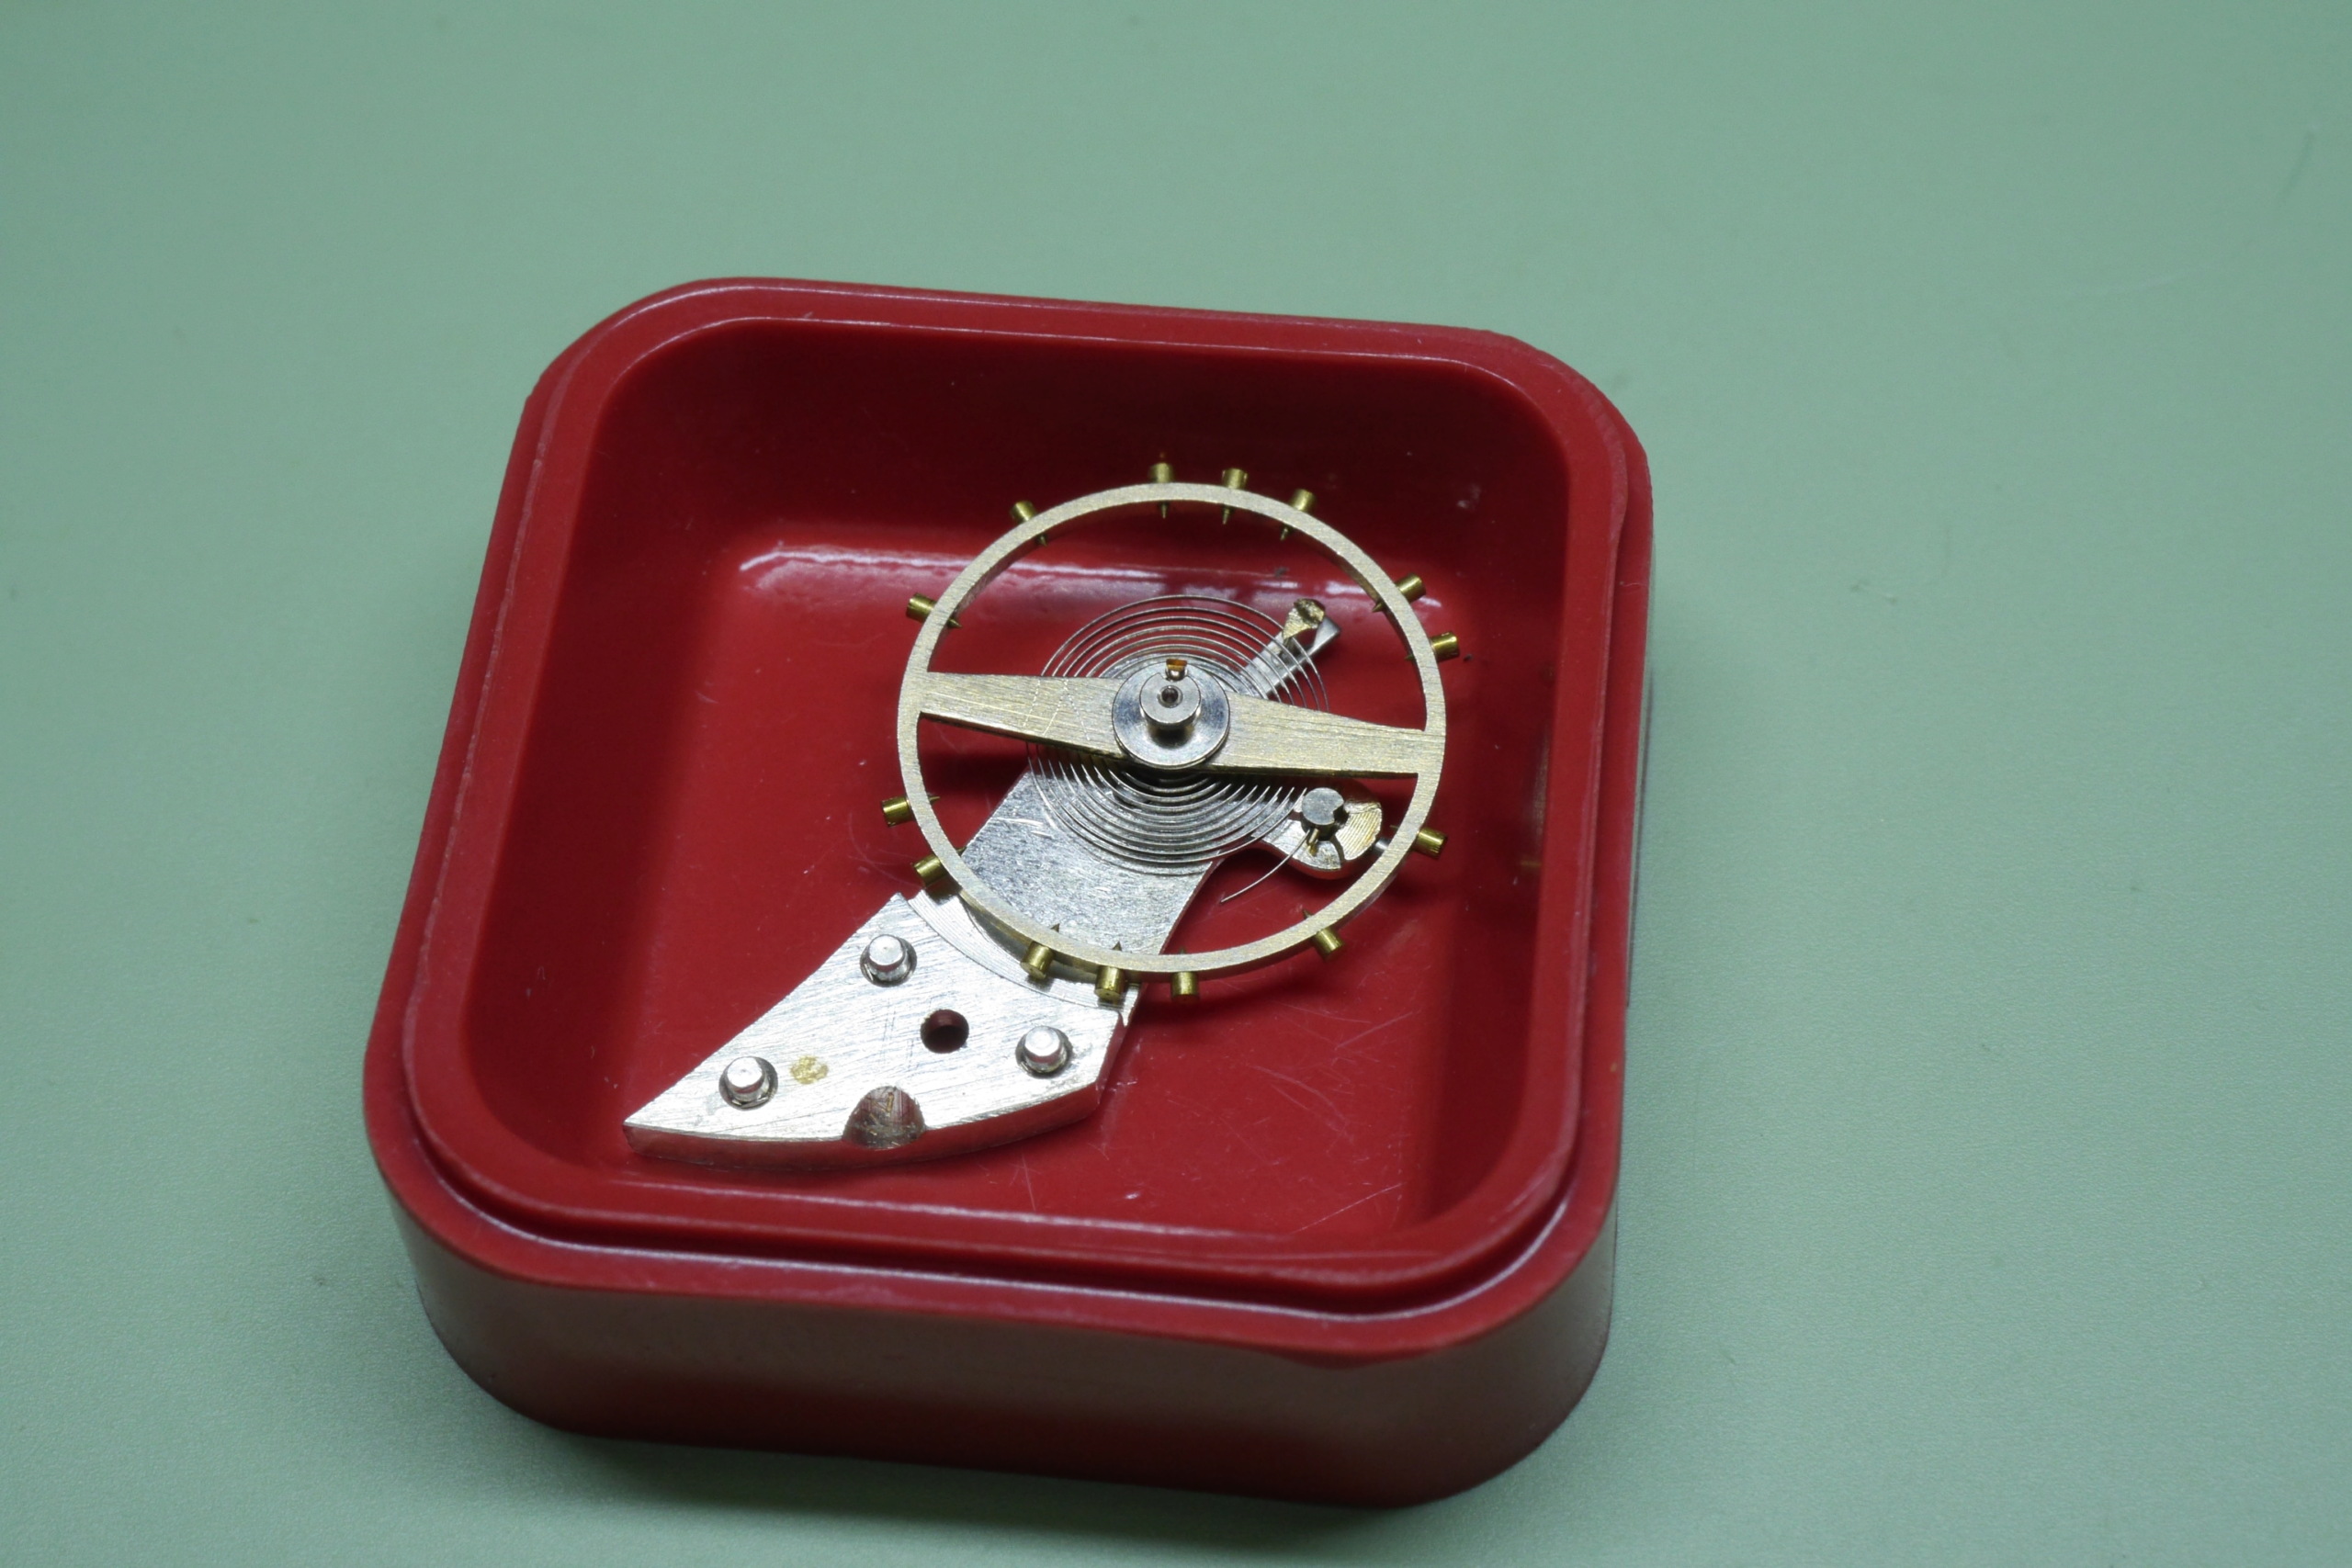 Réparation et entretien d'une montre de poche S.F.L (société française longines) 7910